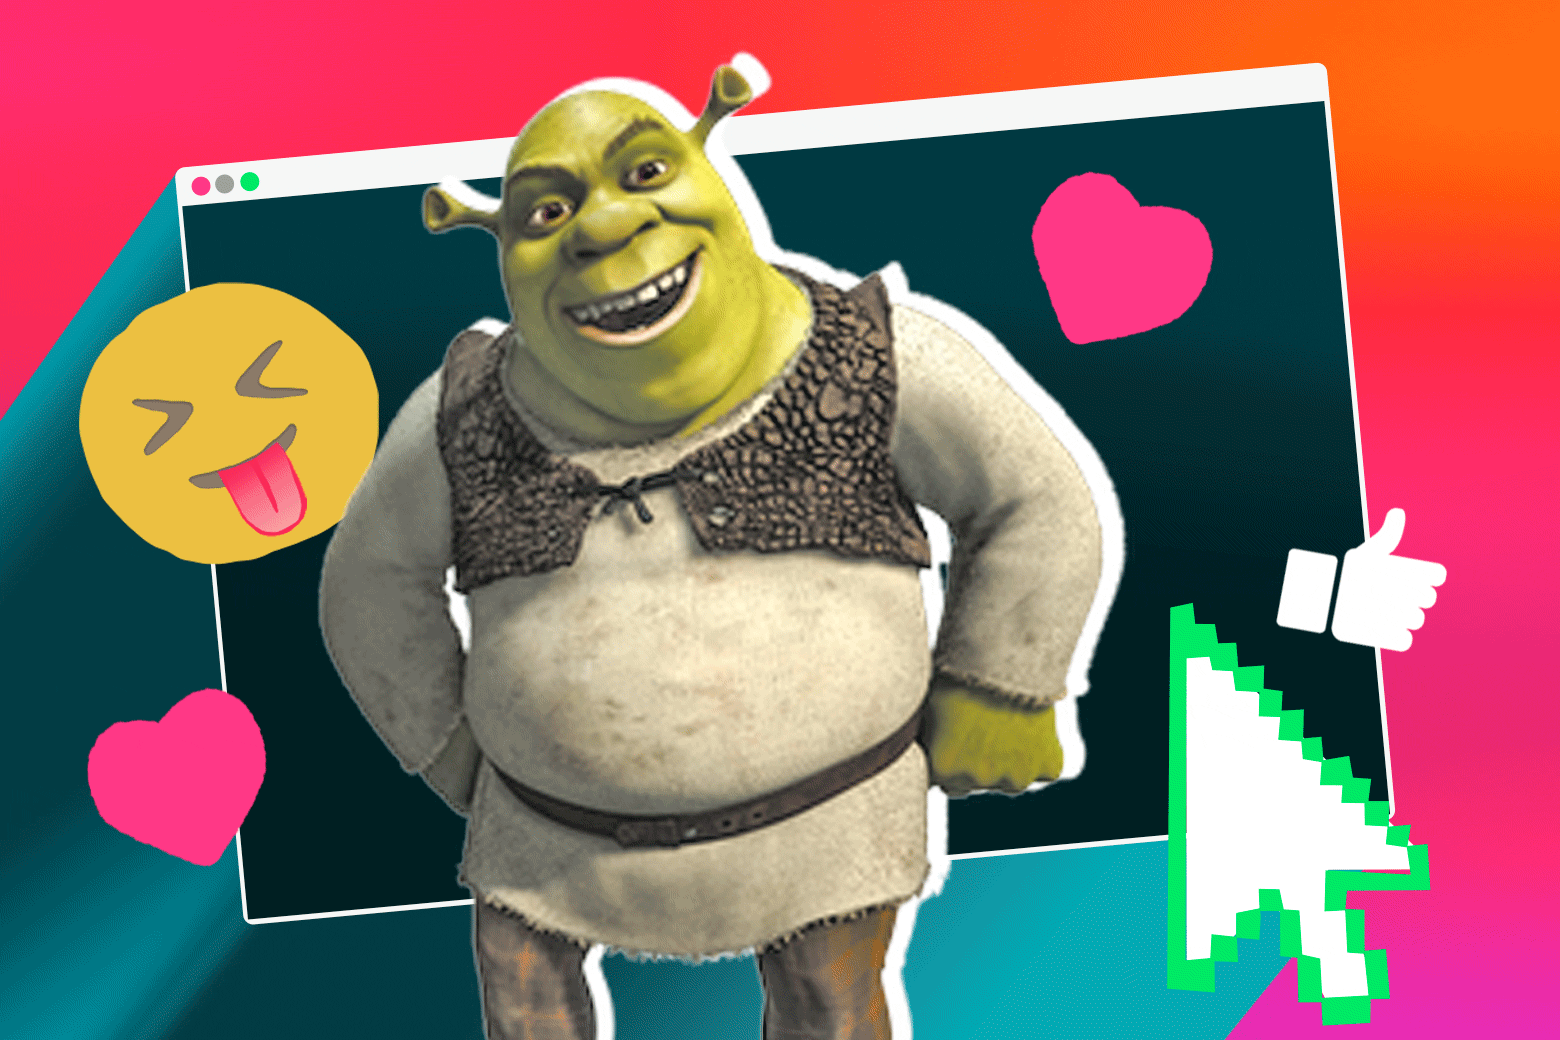 Shrek’s Thriving, Disgusting Online Legacy.